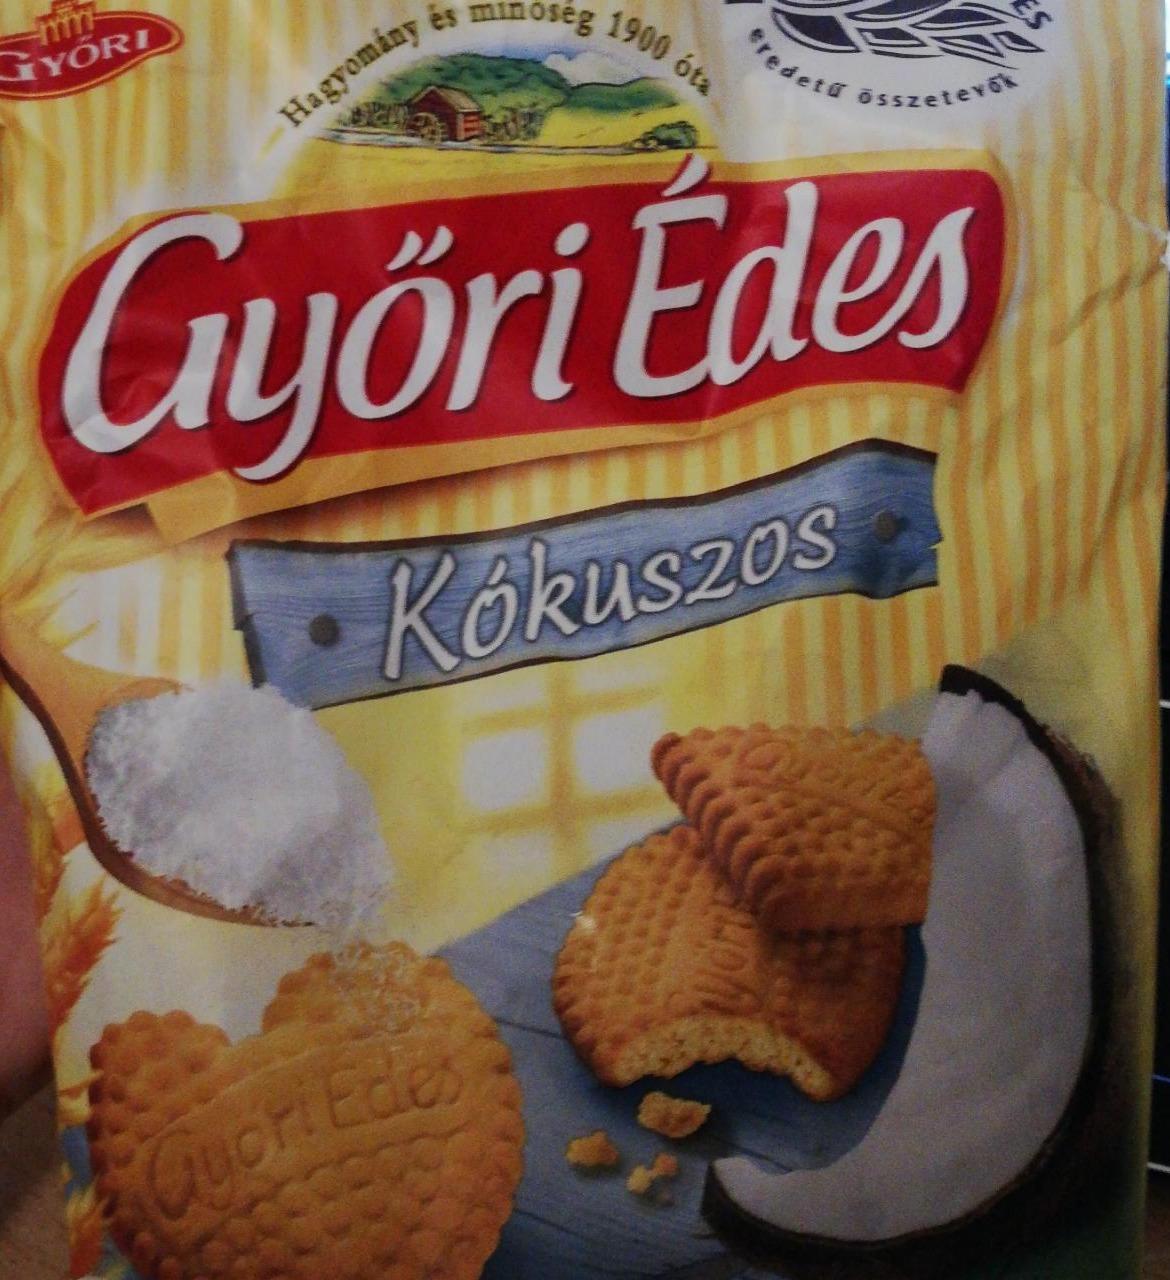 Képek - Győri Édes Kókuszos Győri